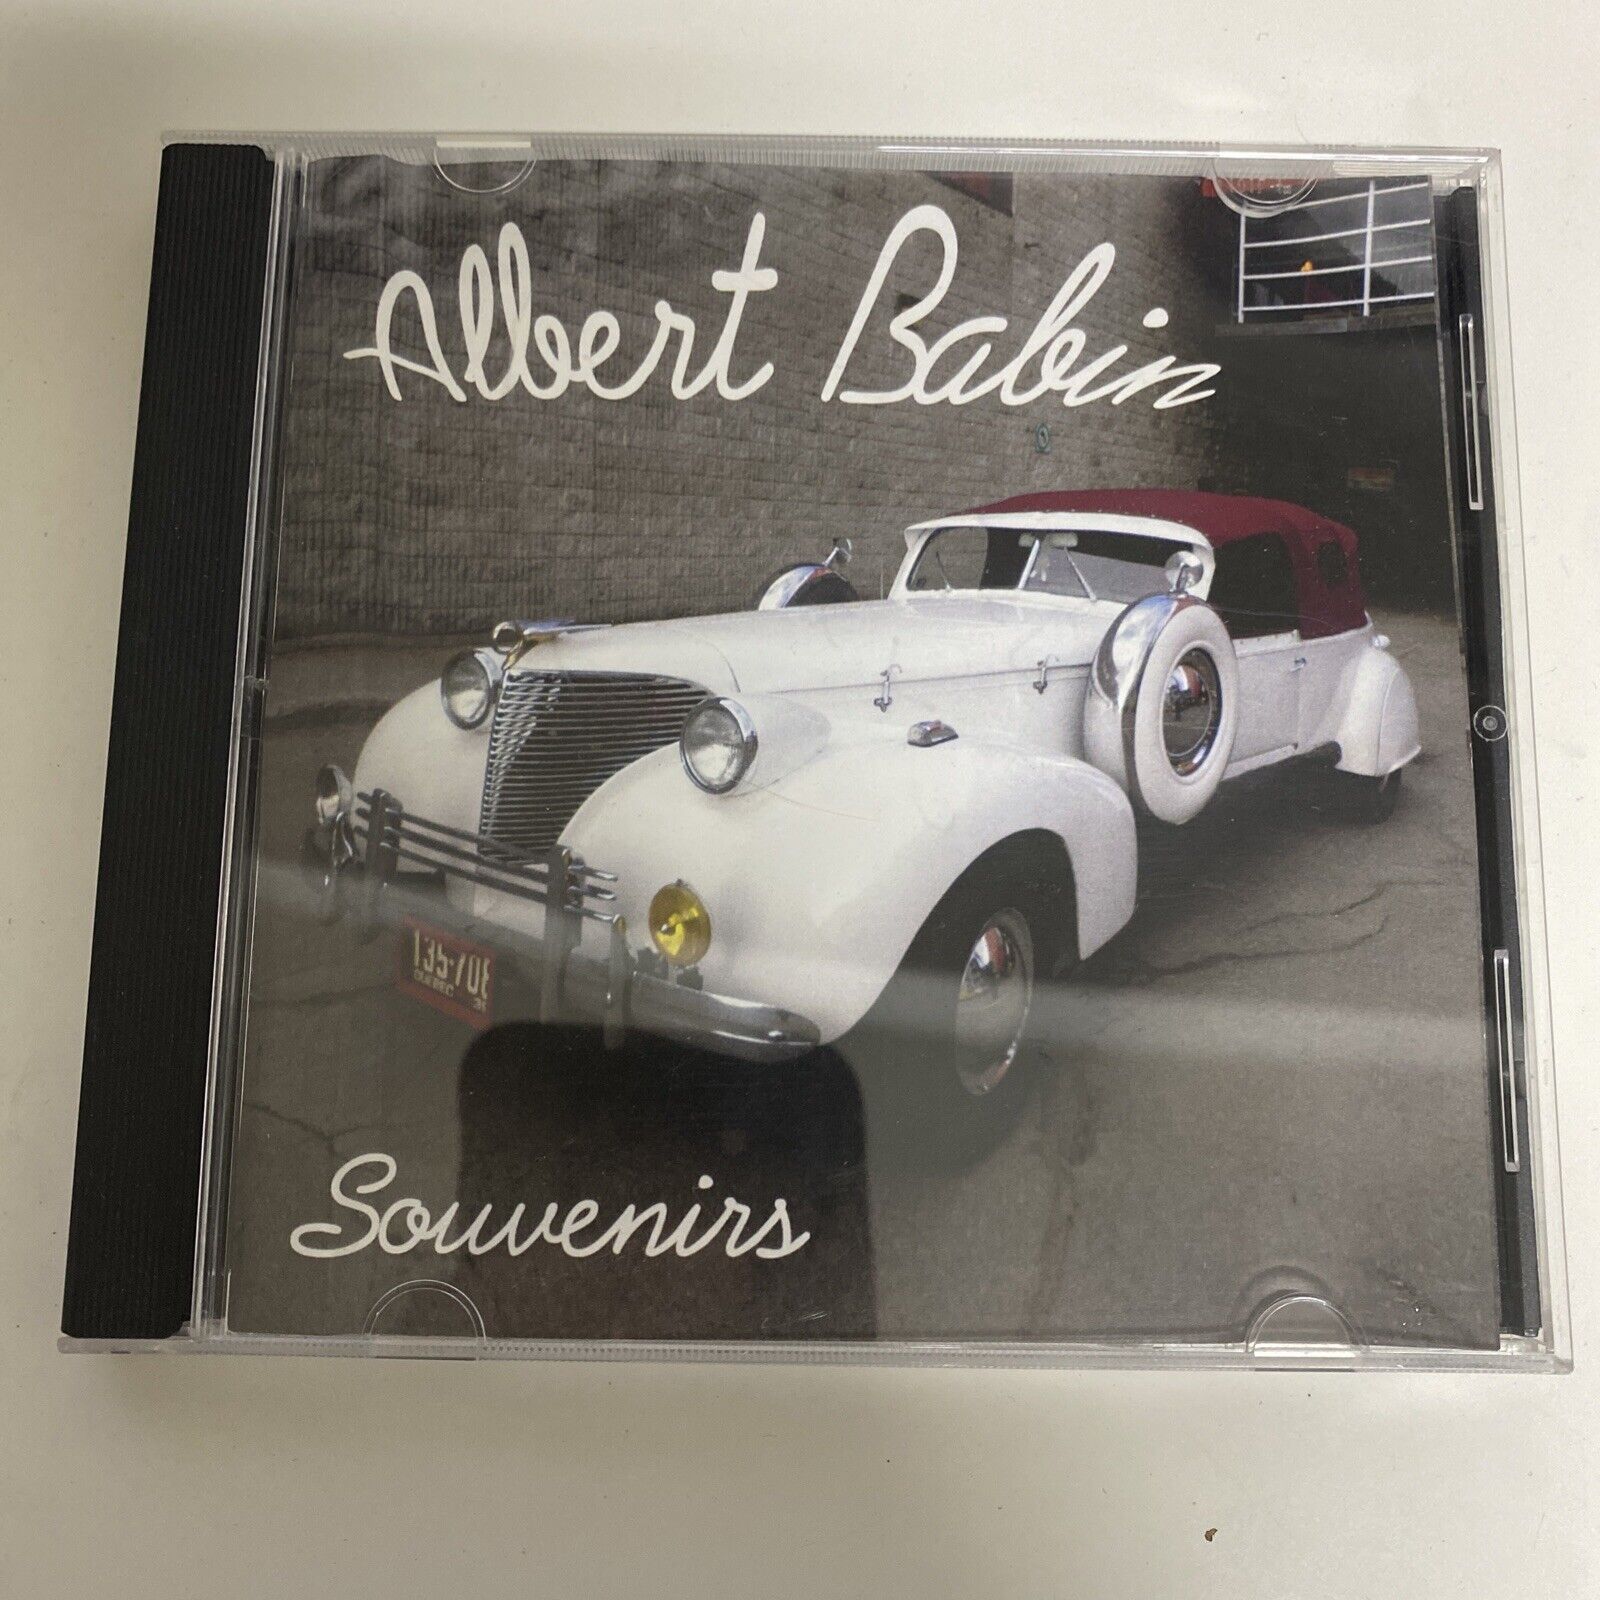 Albert Babin Souvenirs - CD